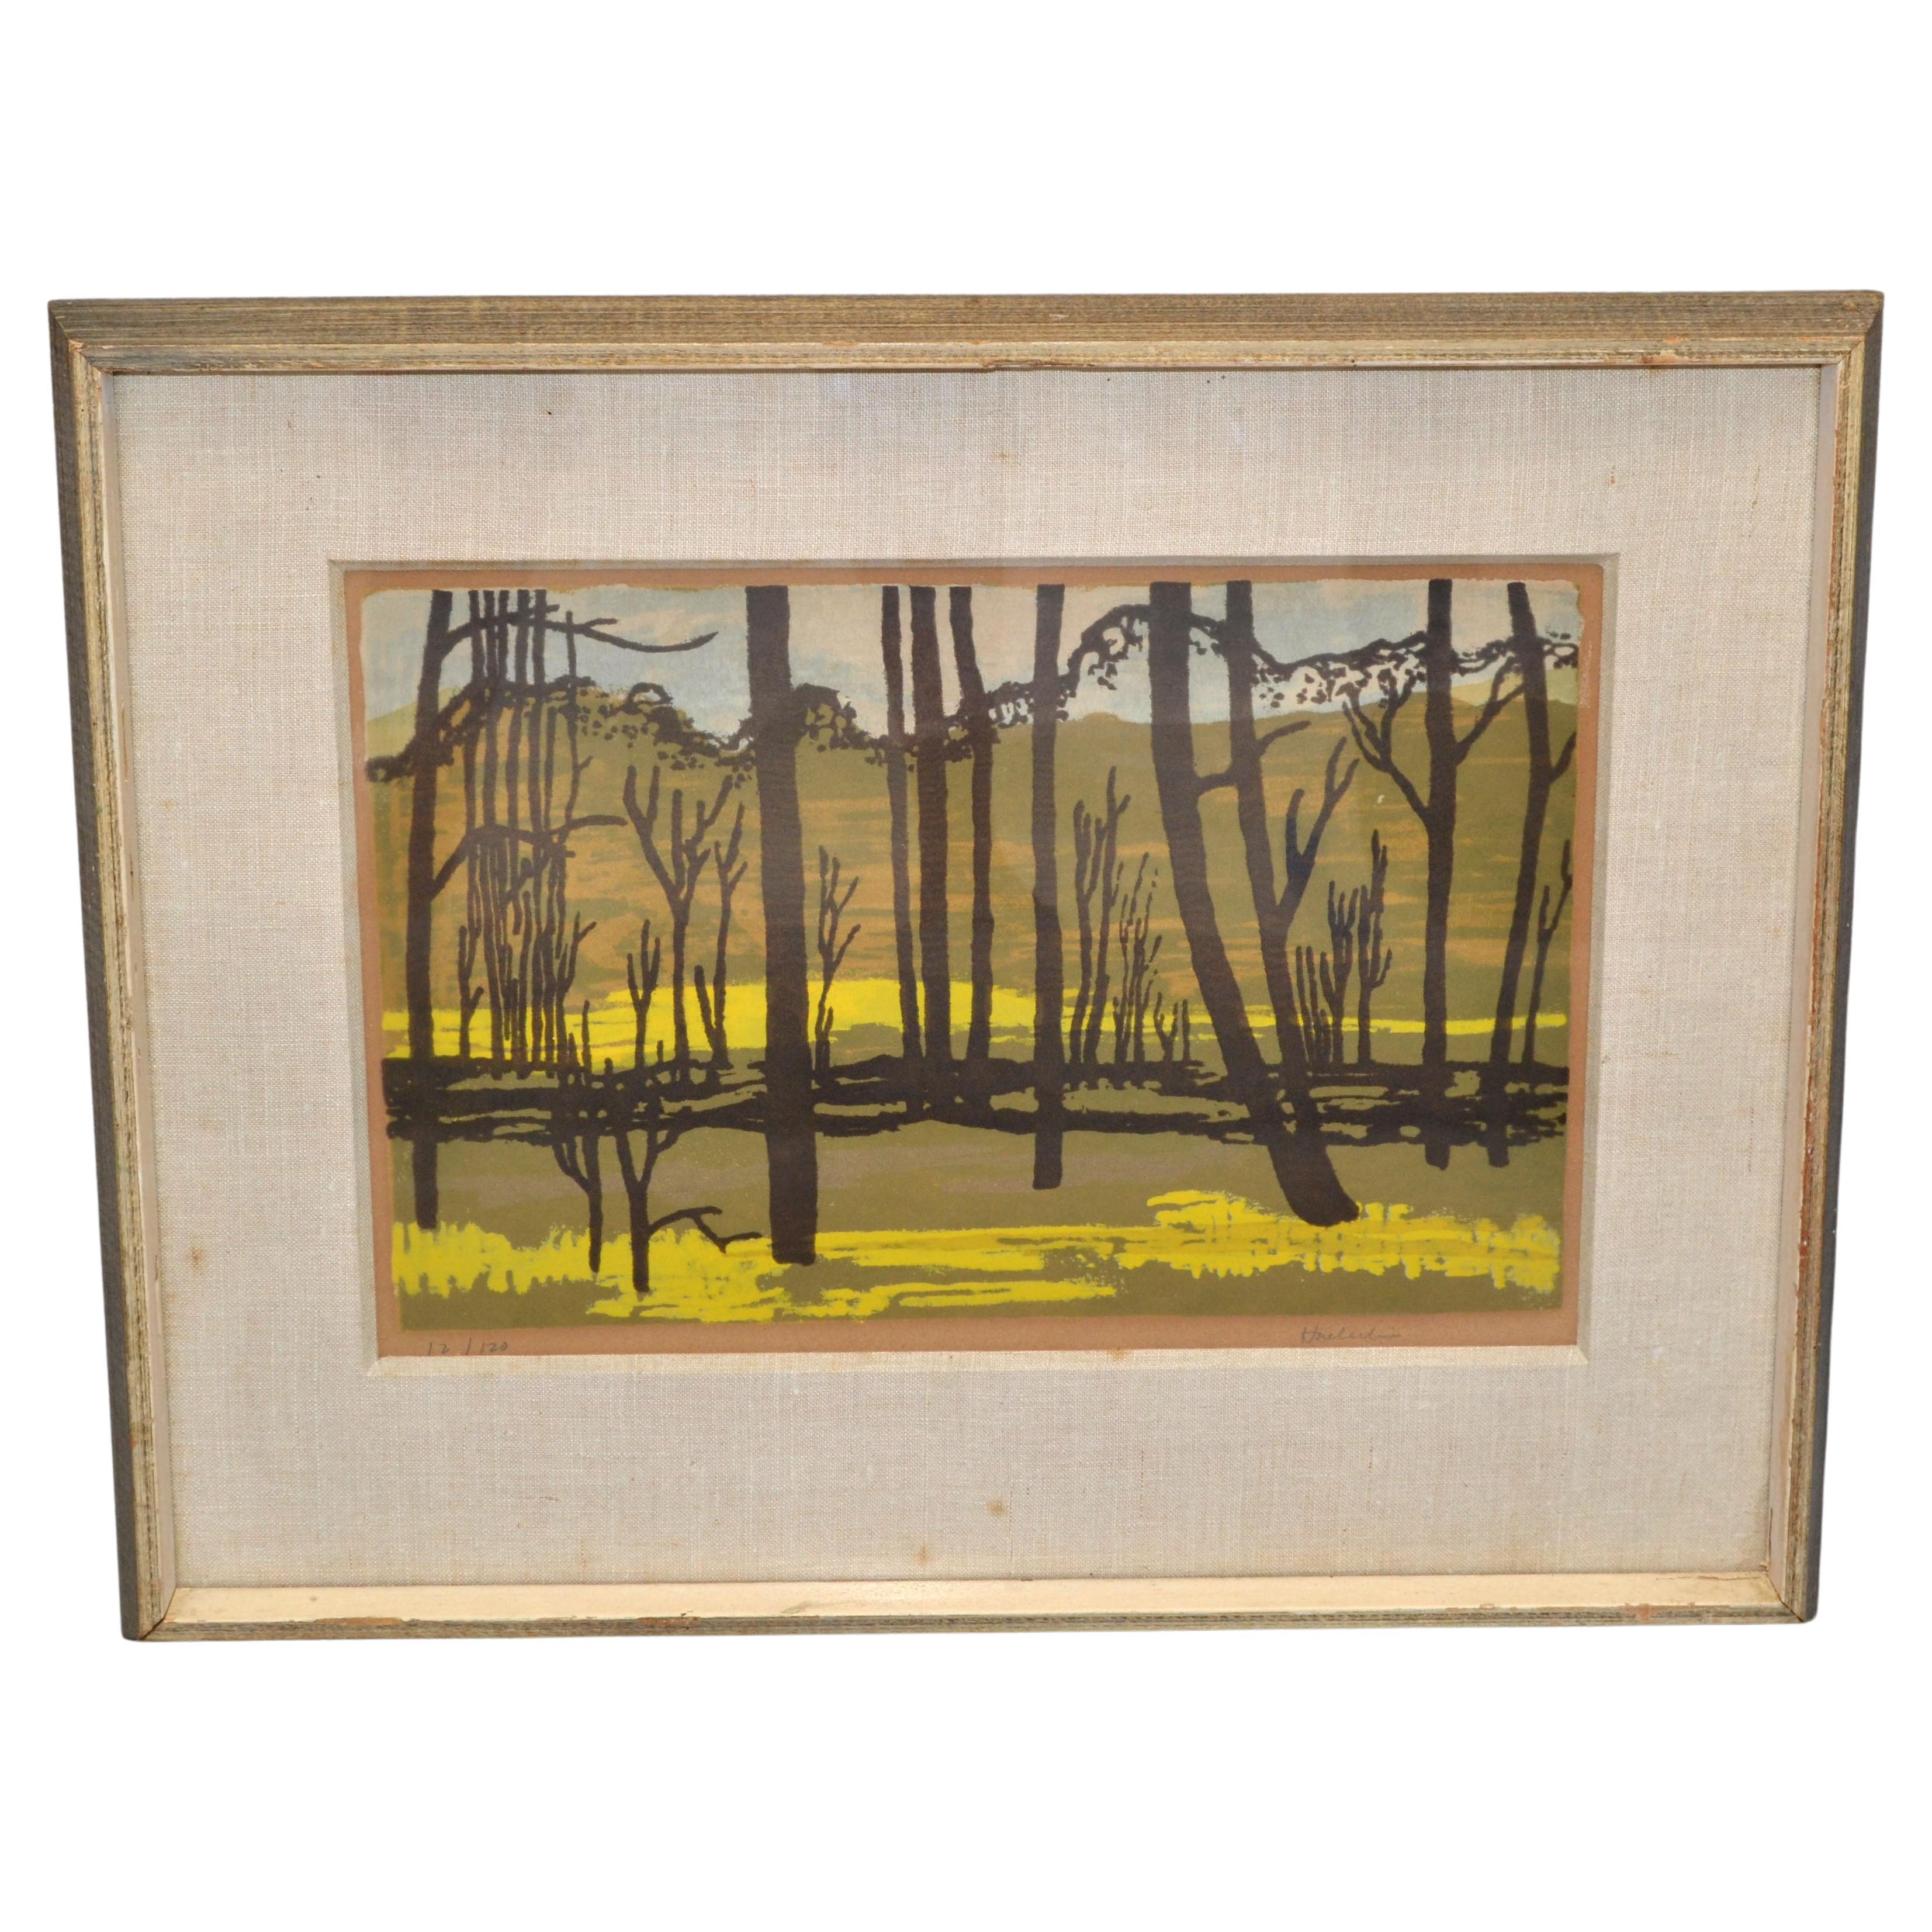 Vintage Signed Huerlin Golden Framed American Painting Landscape Scene Canvas